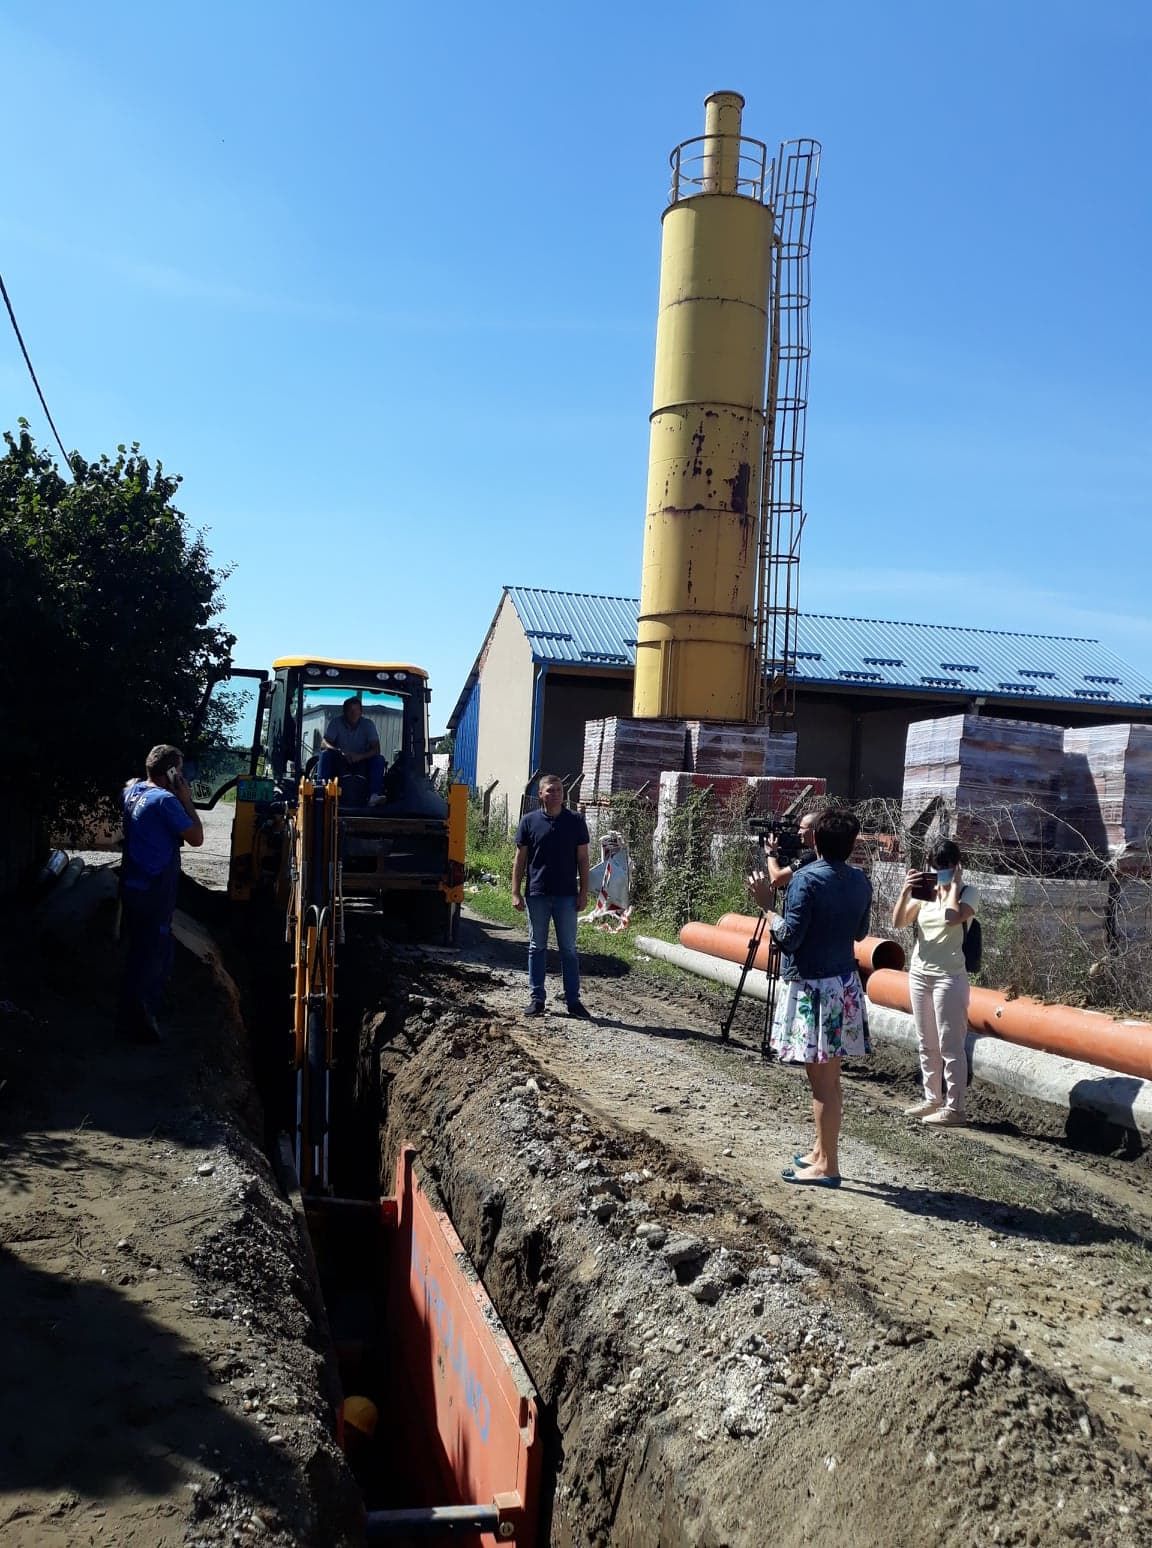 Започети радови на изградњи канализационе мреже у Јеленчи